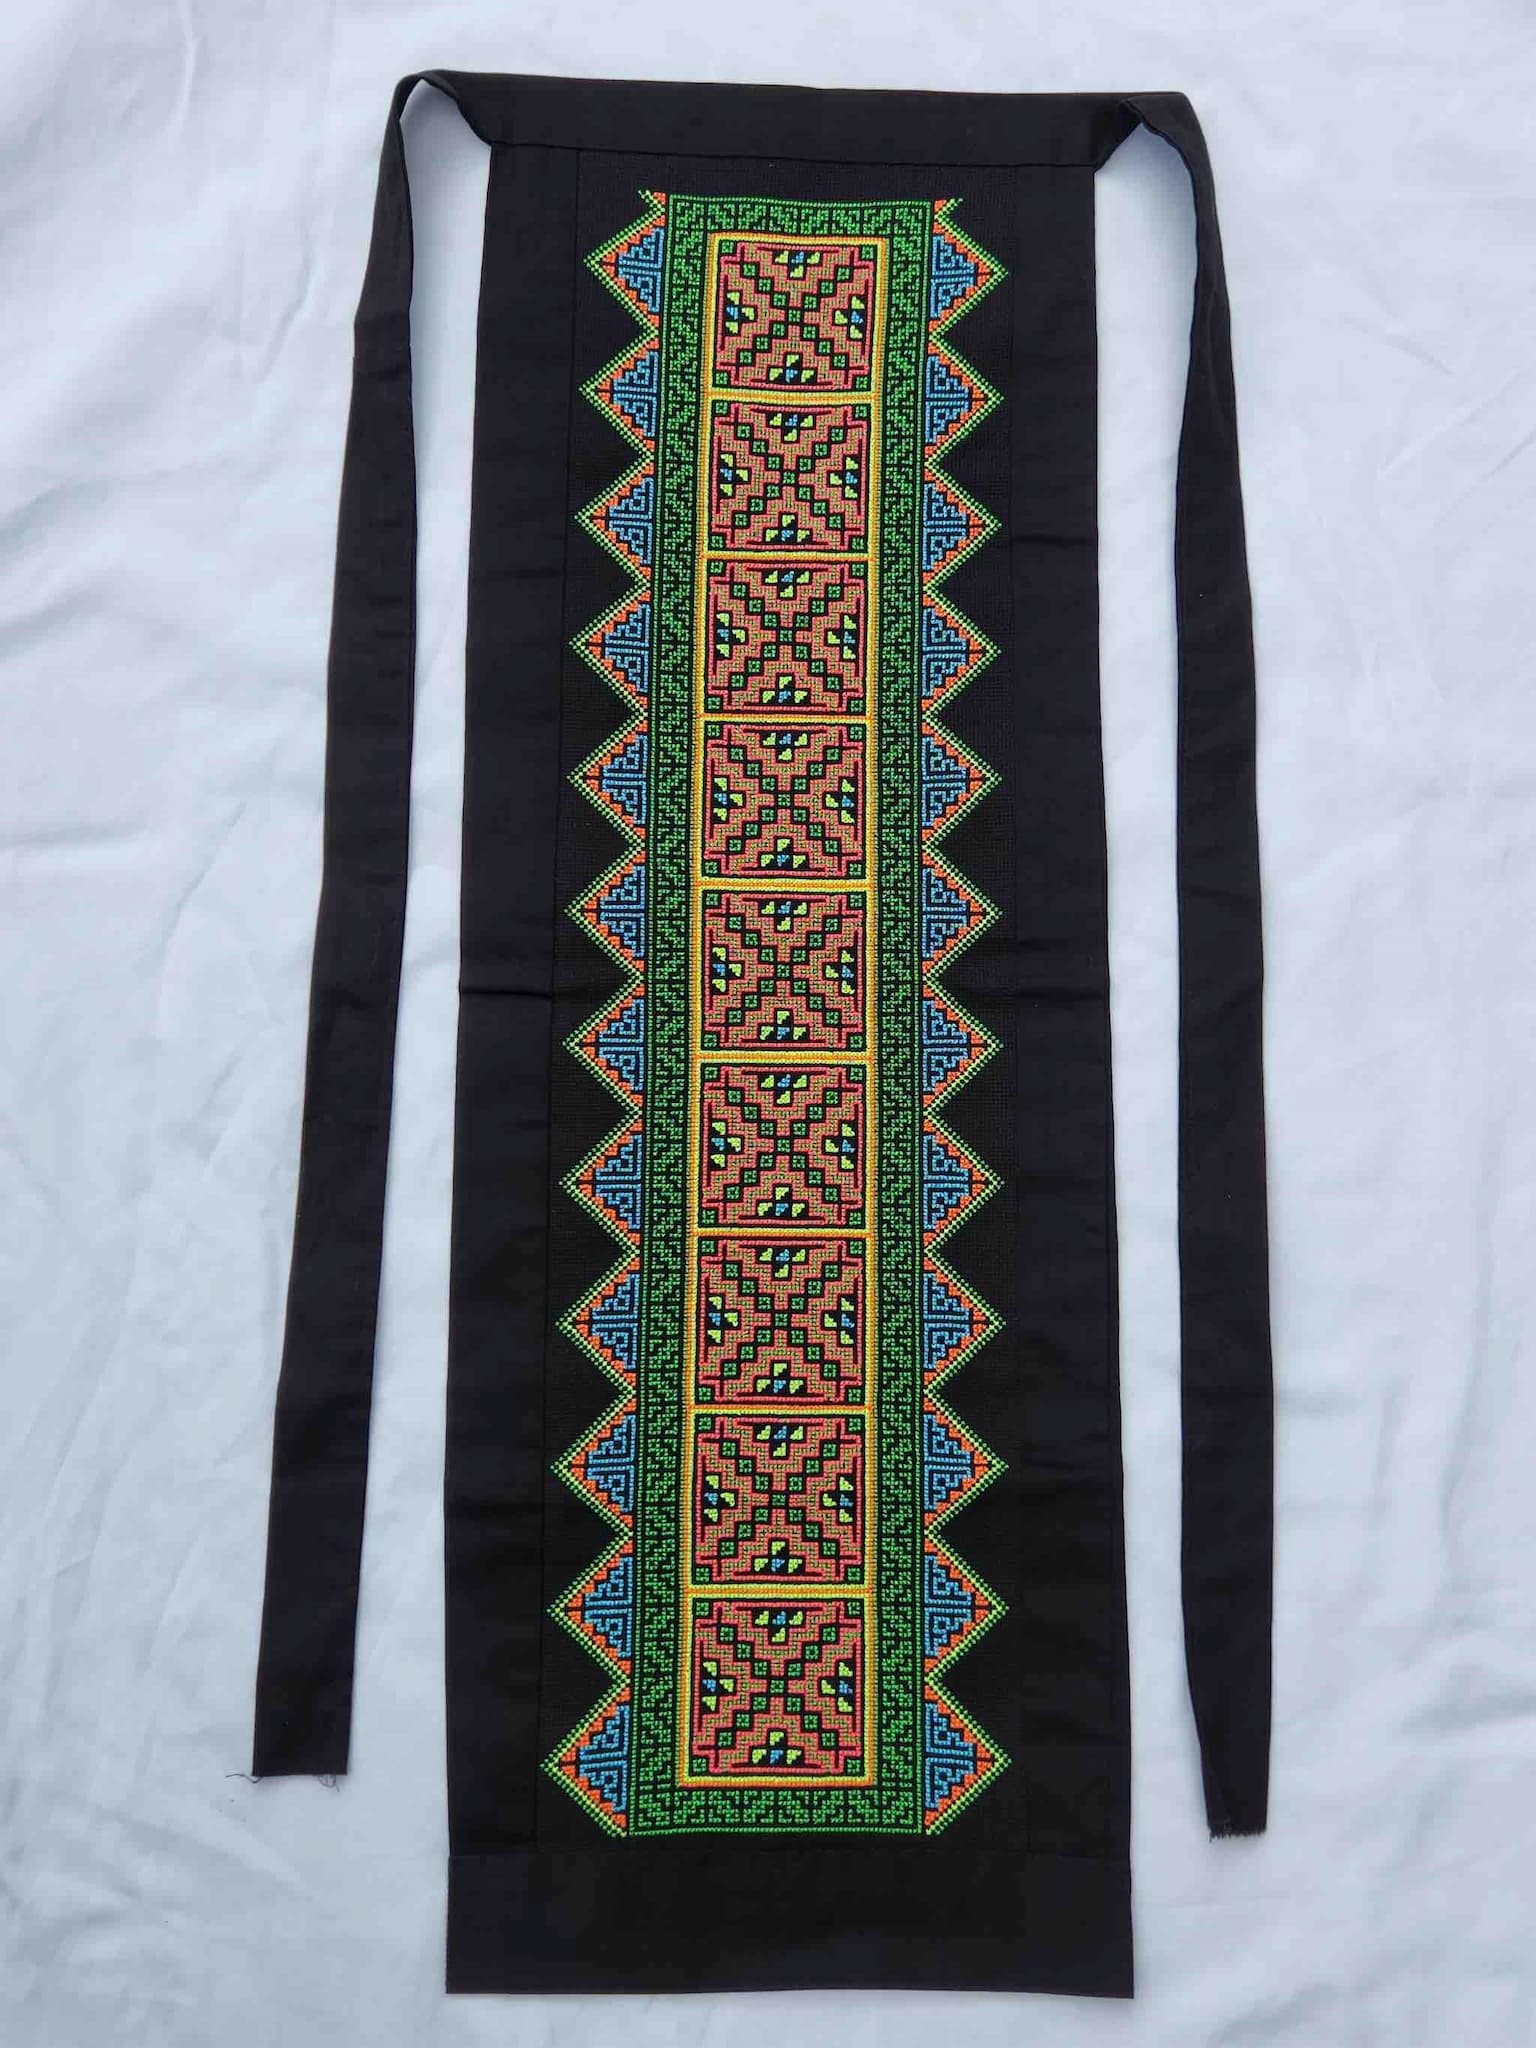 Mandora Young Hmong embroidery paj ntaub